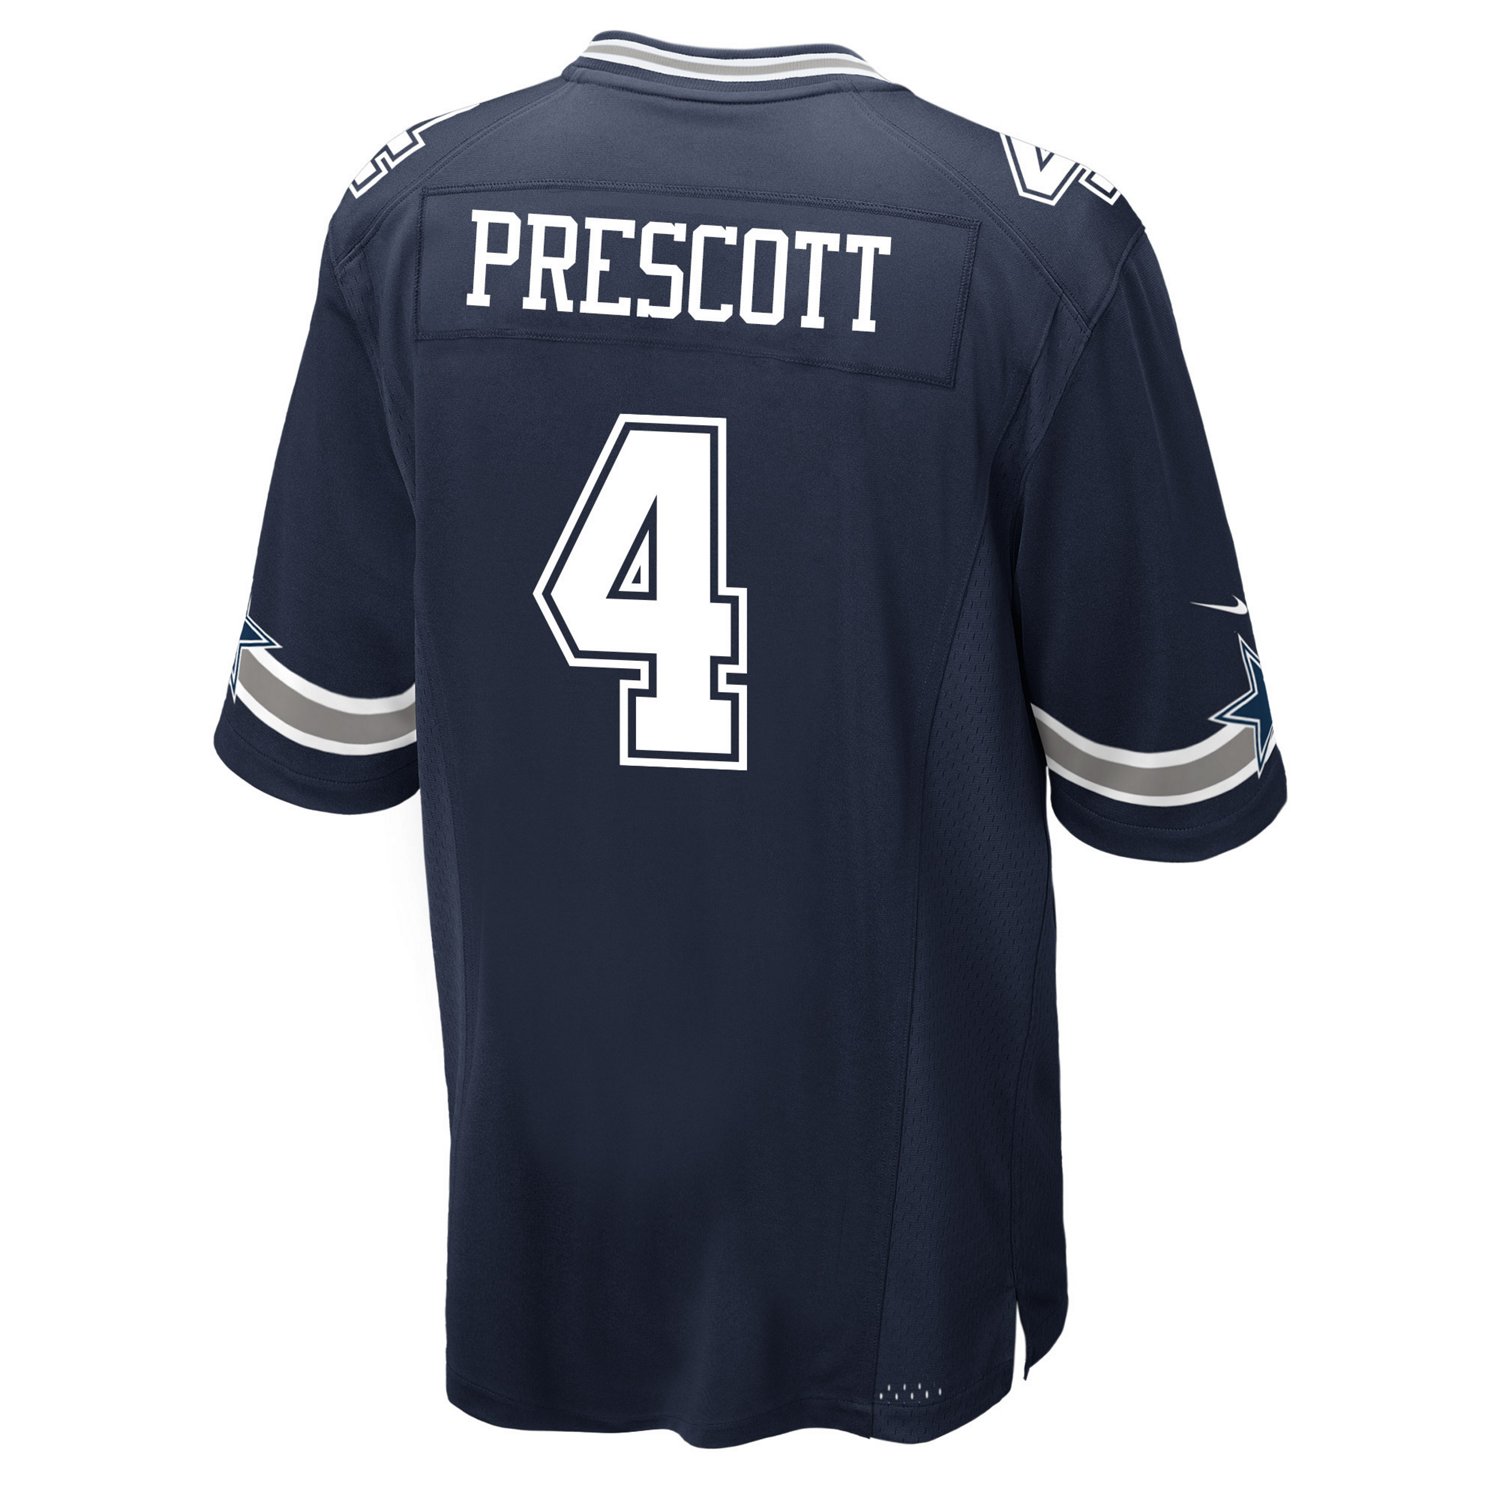 dak prescott jersey number